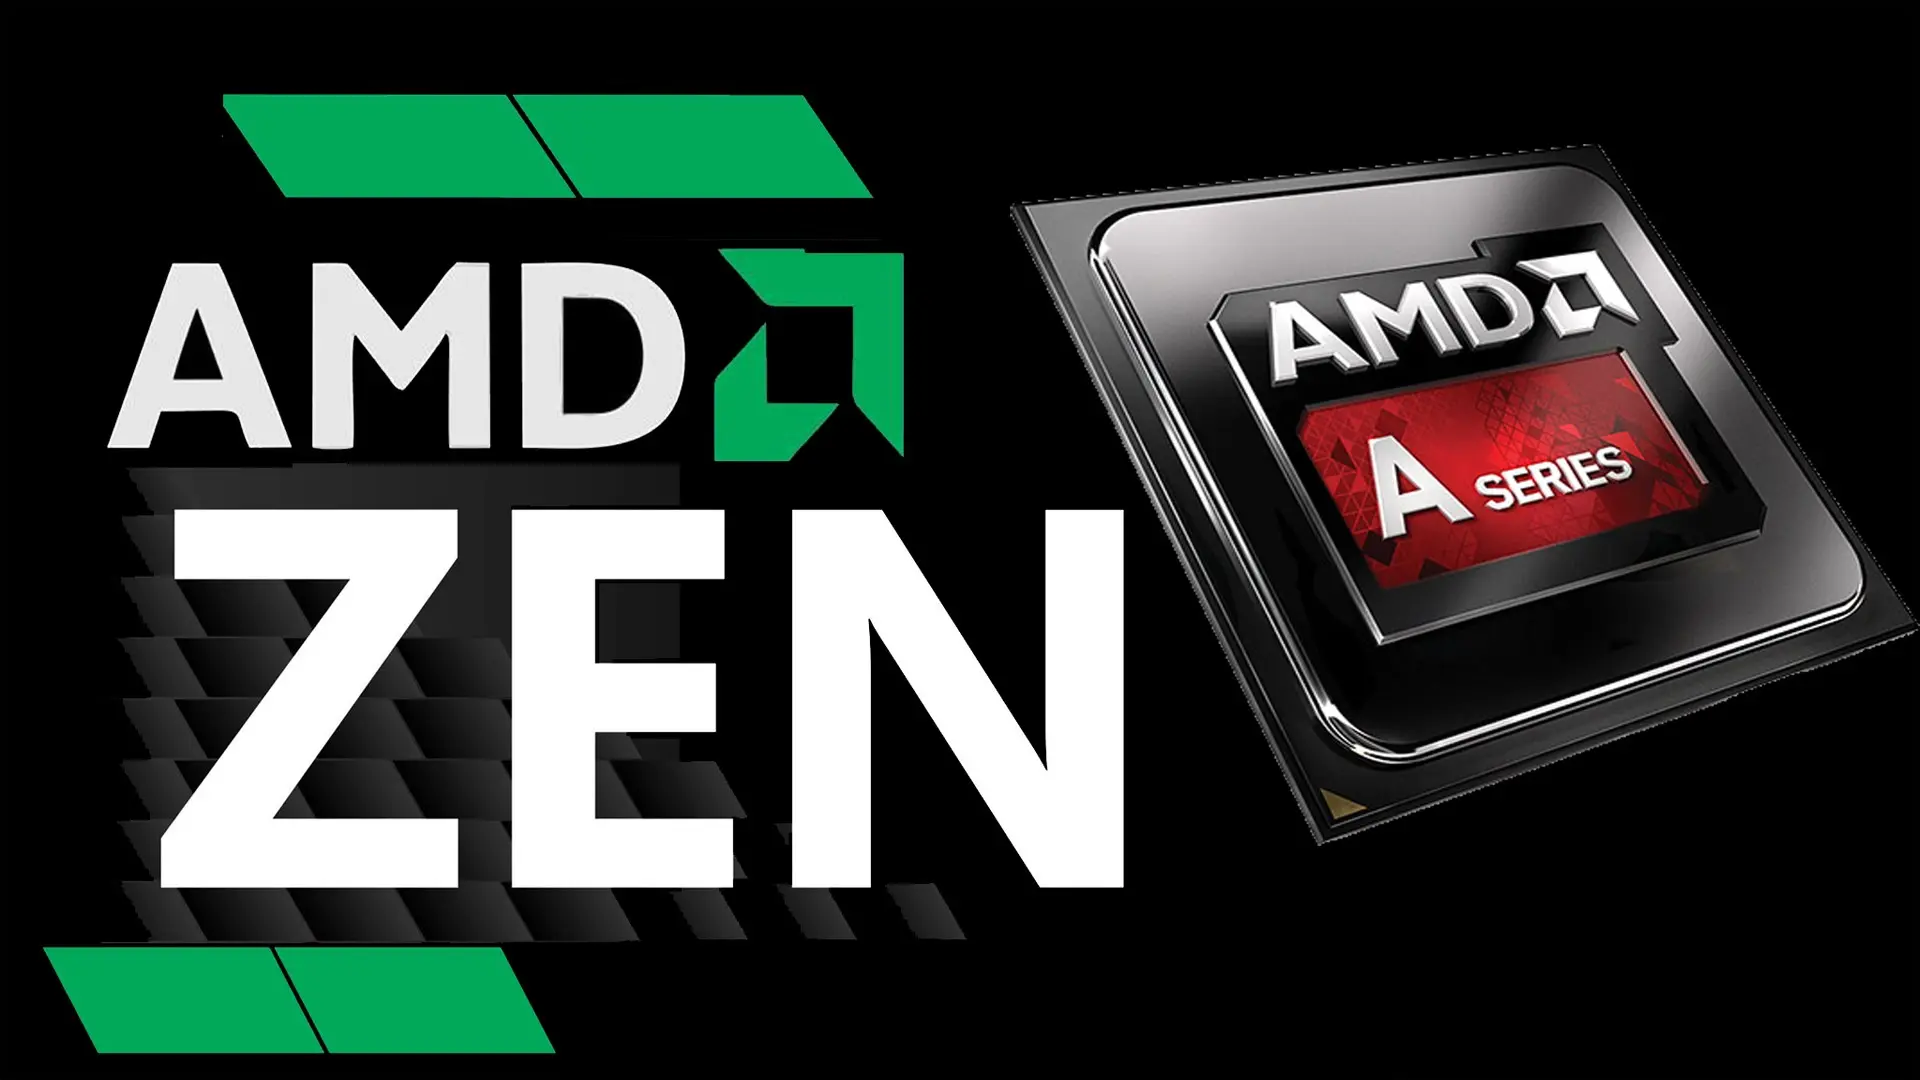 AMD Zen llegará a los portátiles durante el Q2 2017